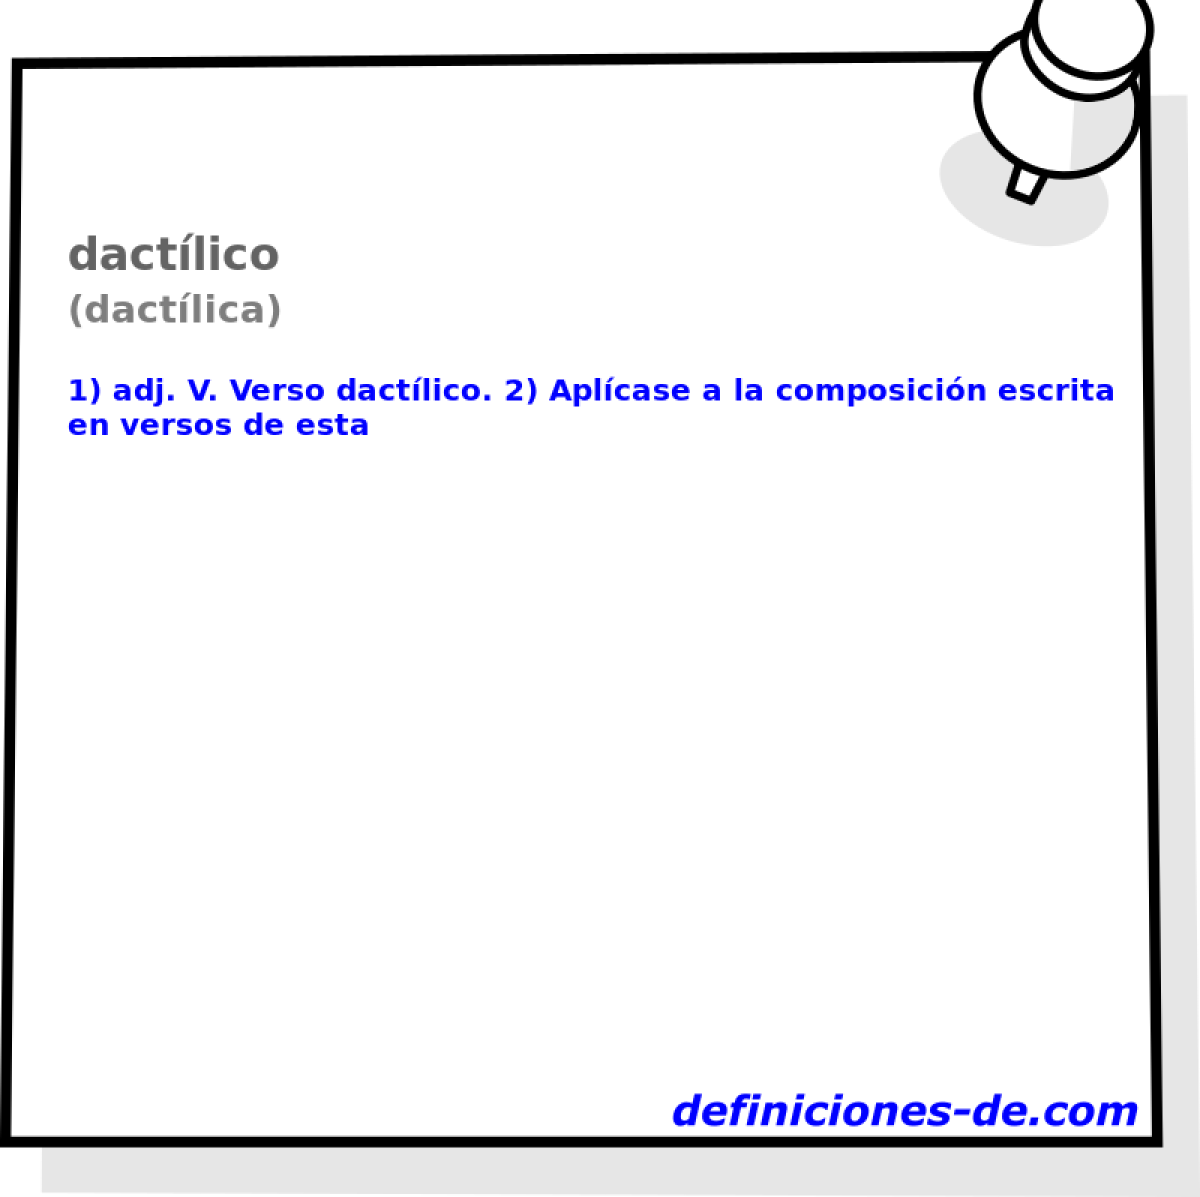 dactlico (dactlica)